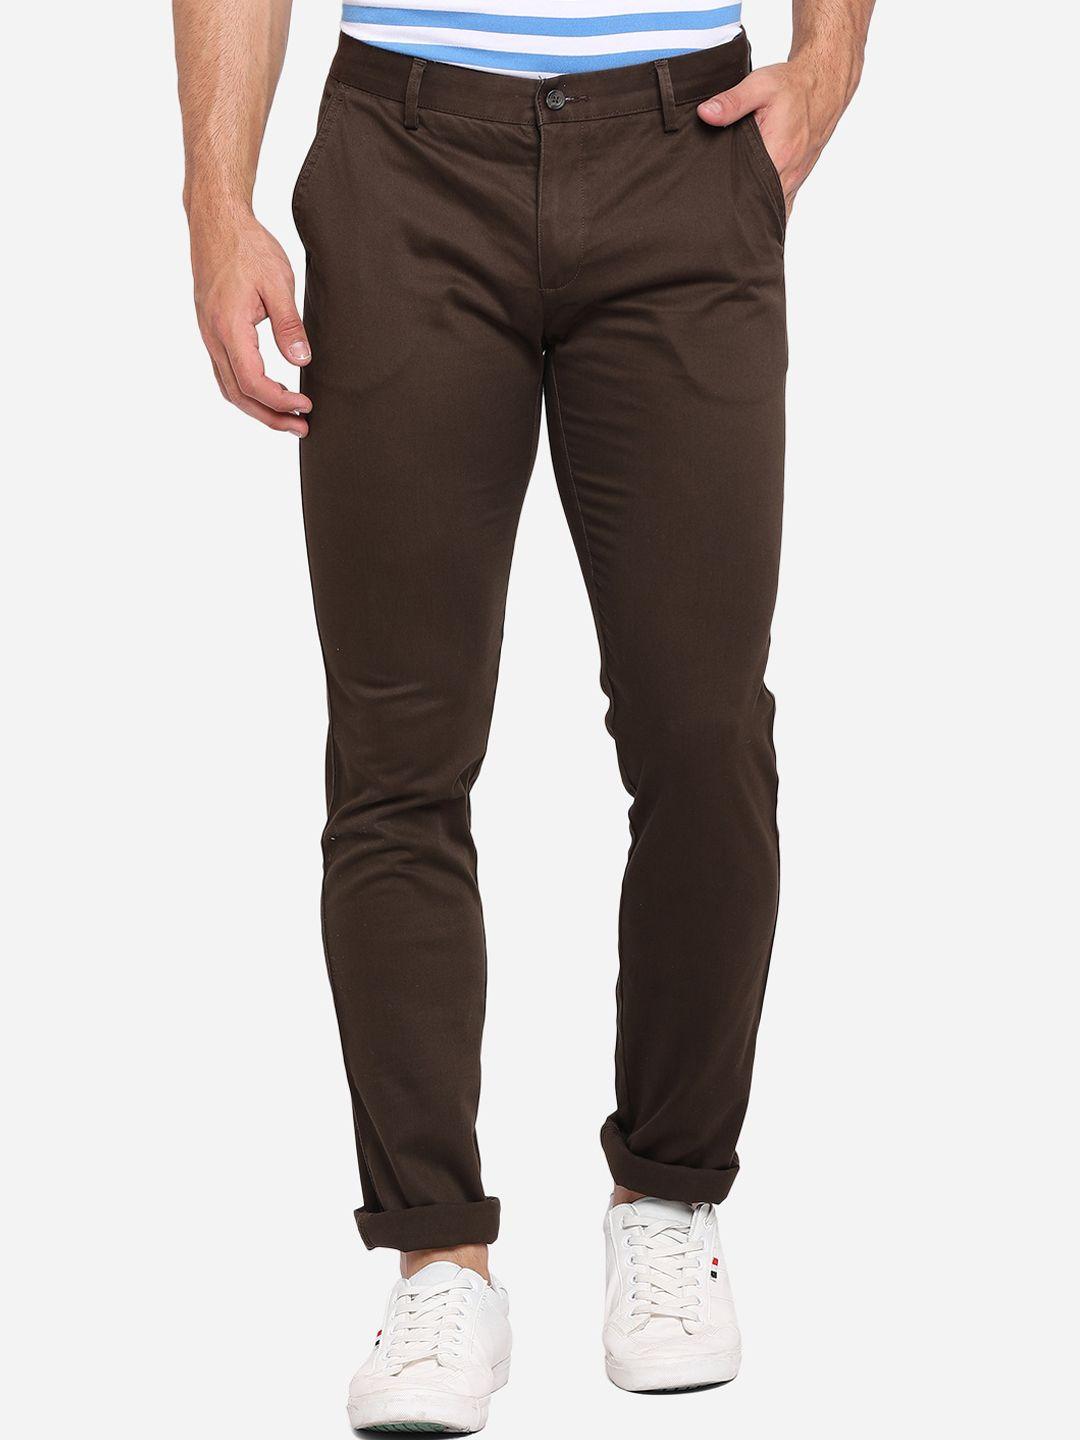 greenfibre-men-brown-slim-fit-trousers